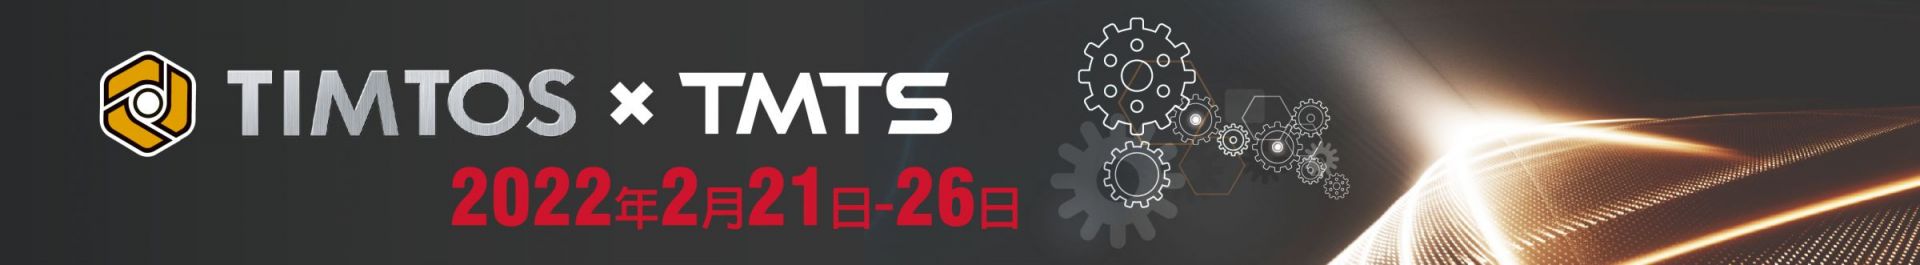 TIMTOS x TMTS 2022 Triển lãm Máy công cụ Quốc tế Đài Bắc